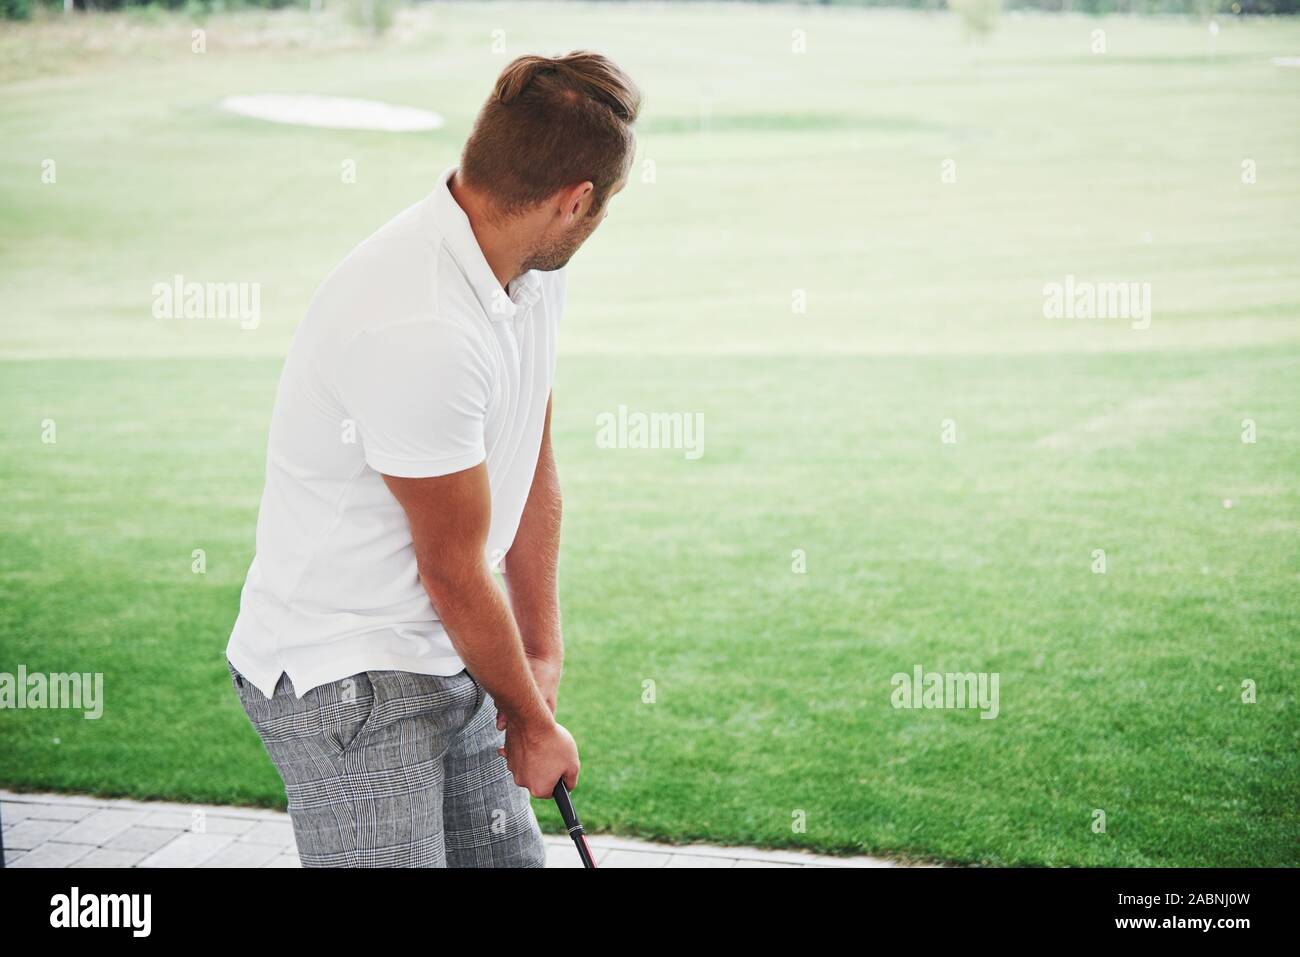 In Pro Golf player volto girato con club in corso. Golfista maschio sul putting green per prendere il colpo, vista posteriore Foto Stock